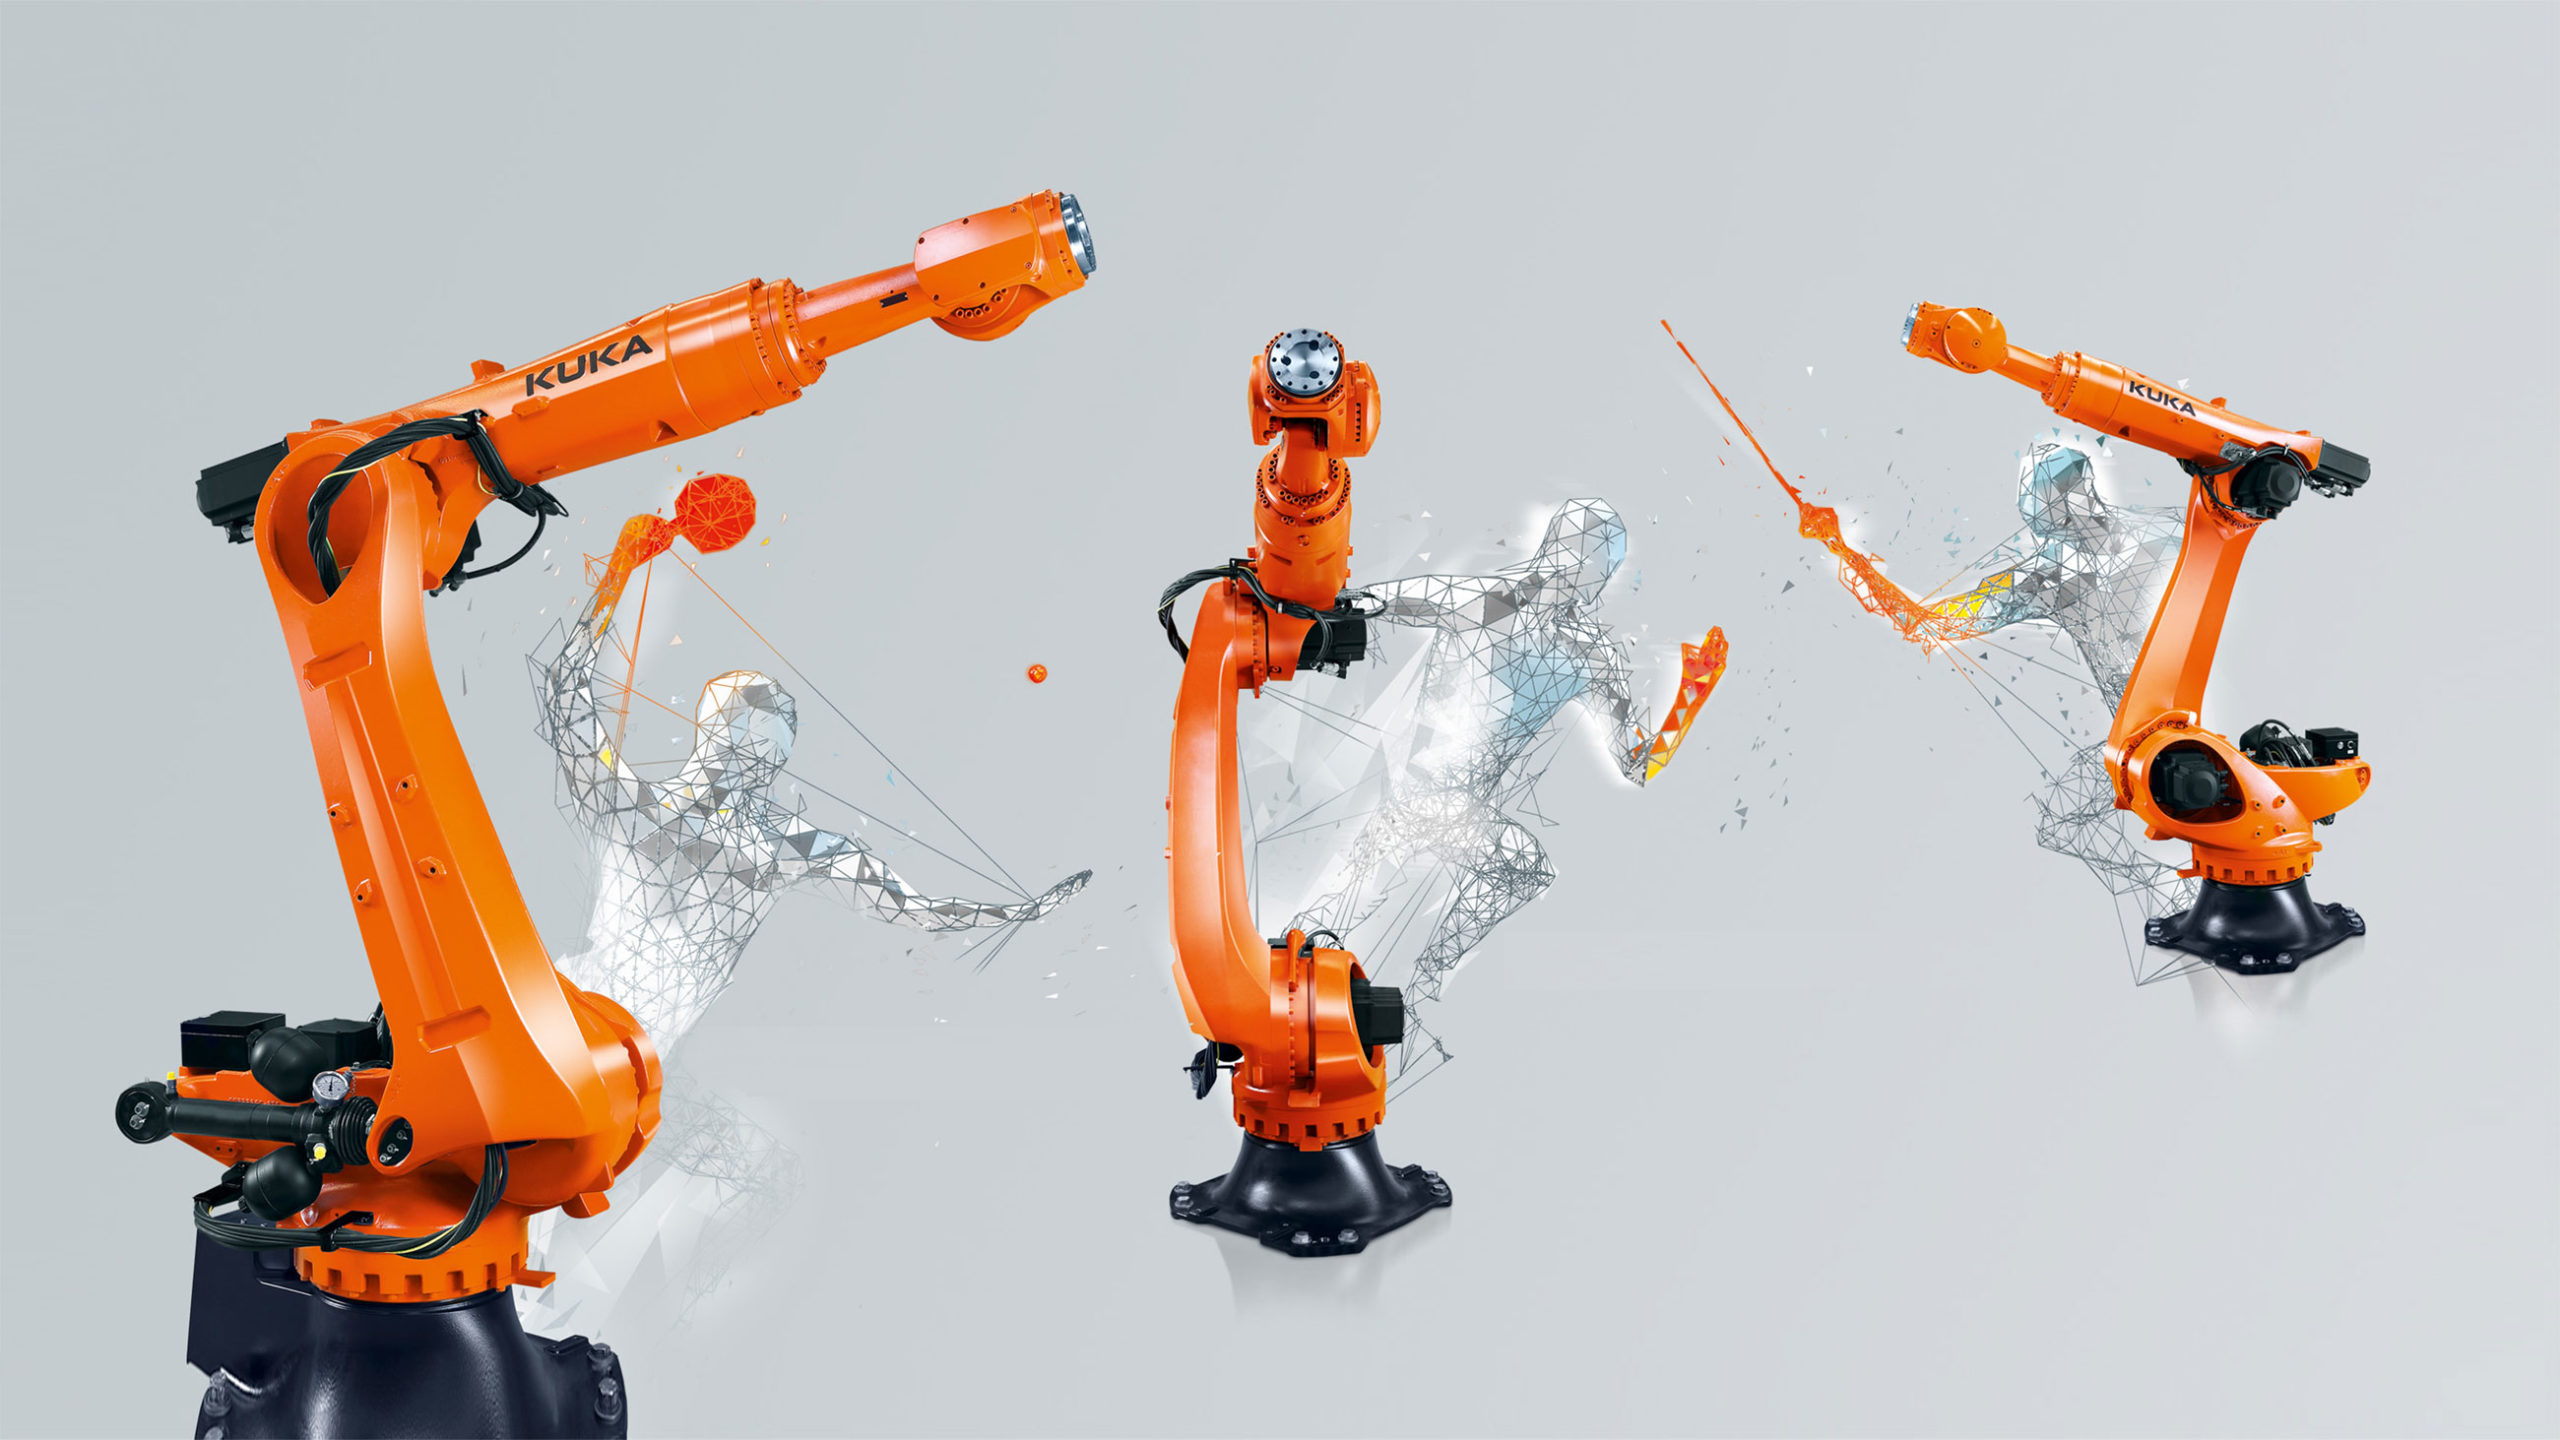 Zdjęcie przedstawia 3 jednoramienne roboty firmy KUKA